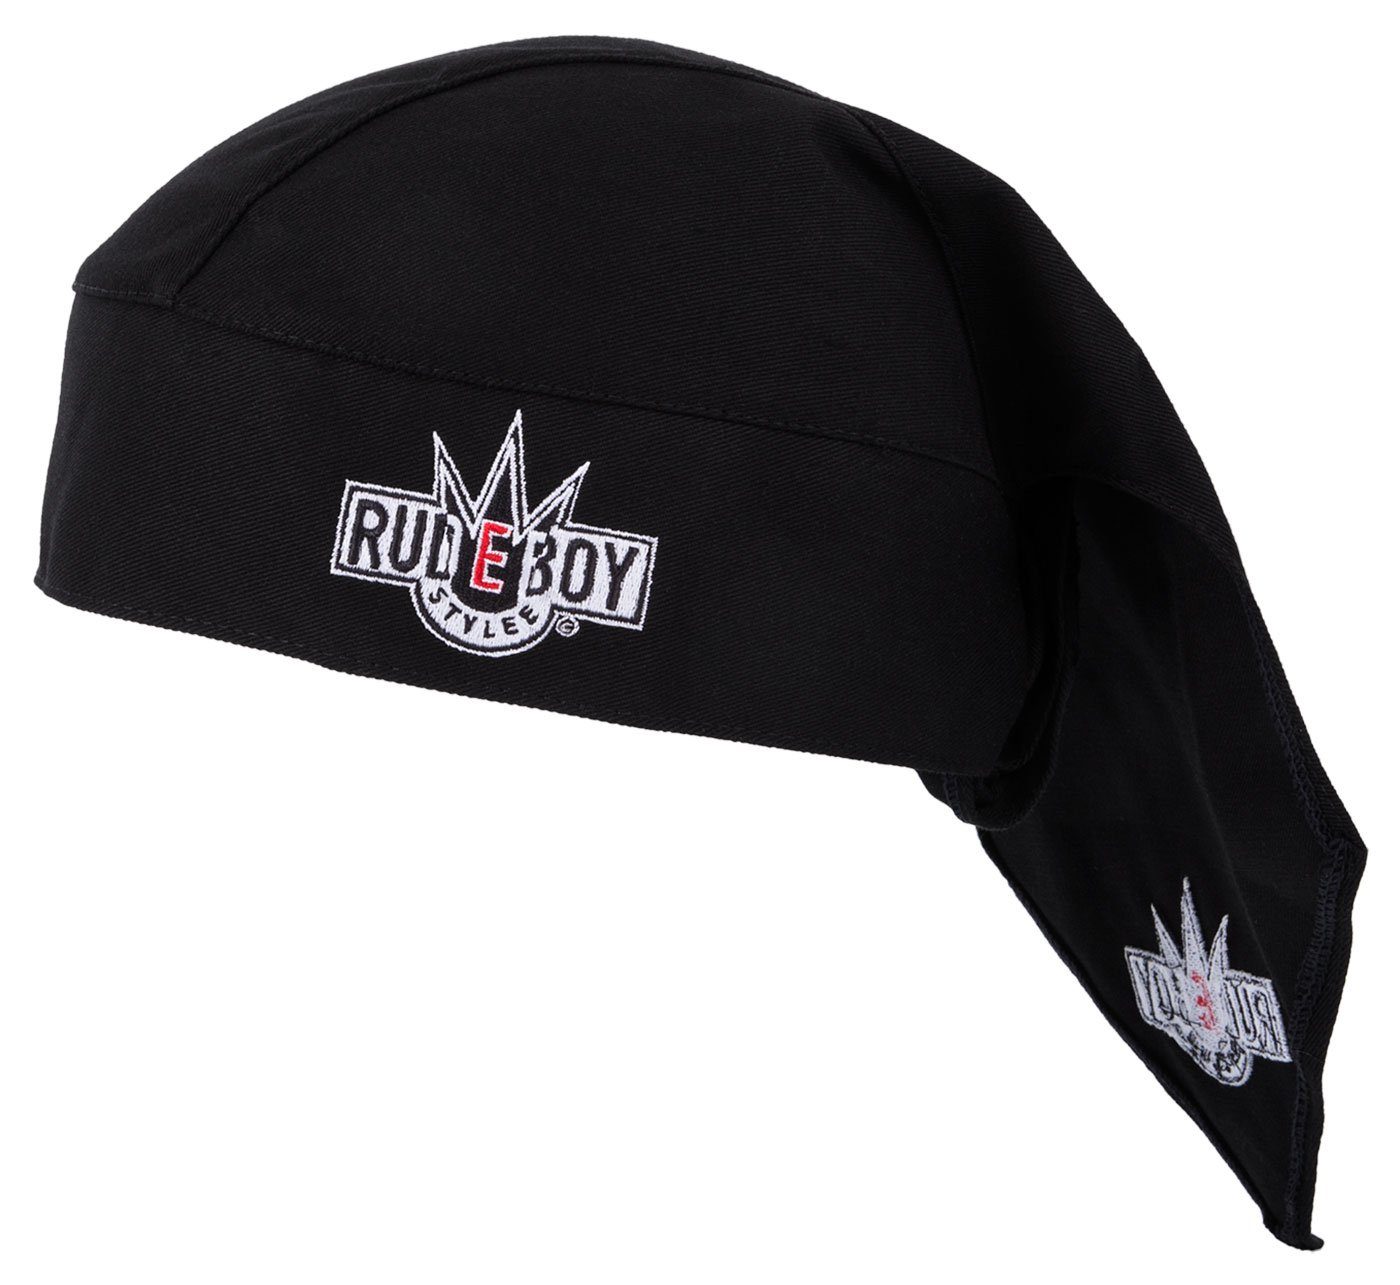 Rudeboy Stylee Bandana Kopftuch Biker Cap bestickt für Damen, Herren und Kinder, Einheitsgröße Schwarz